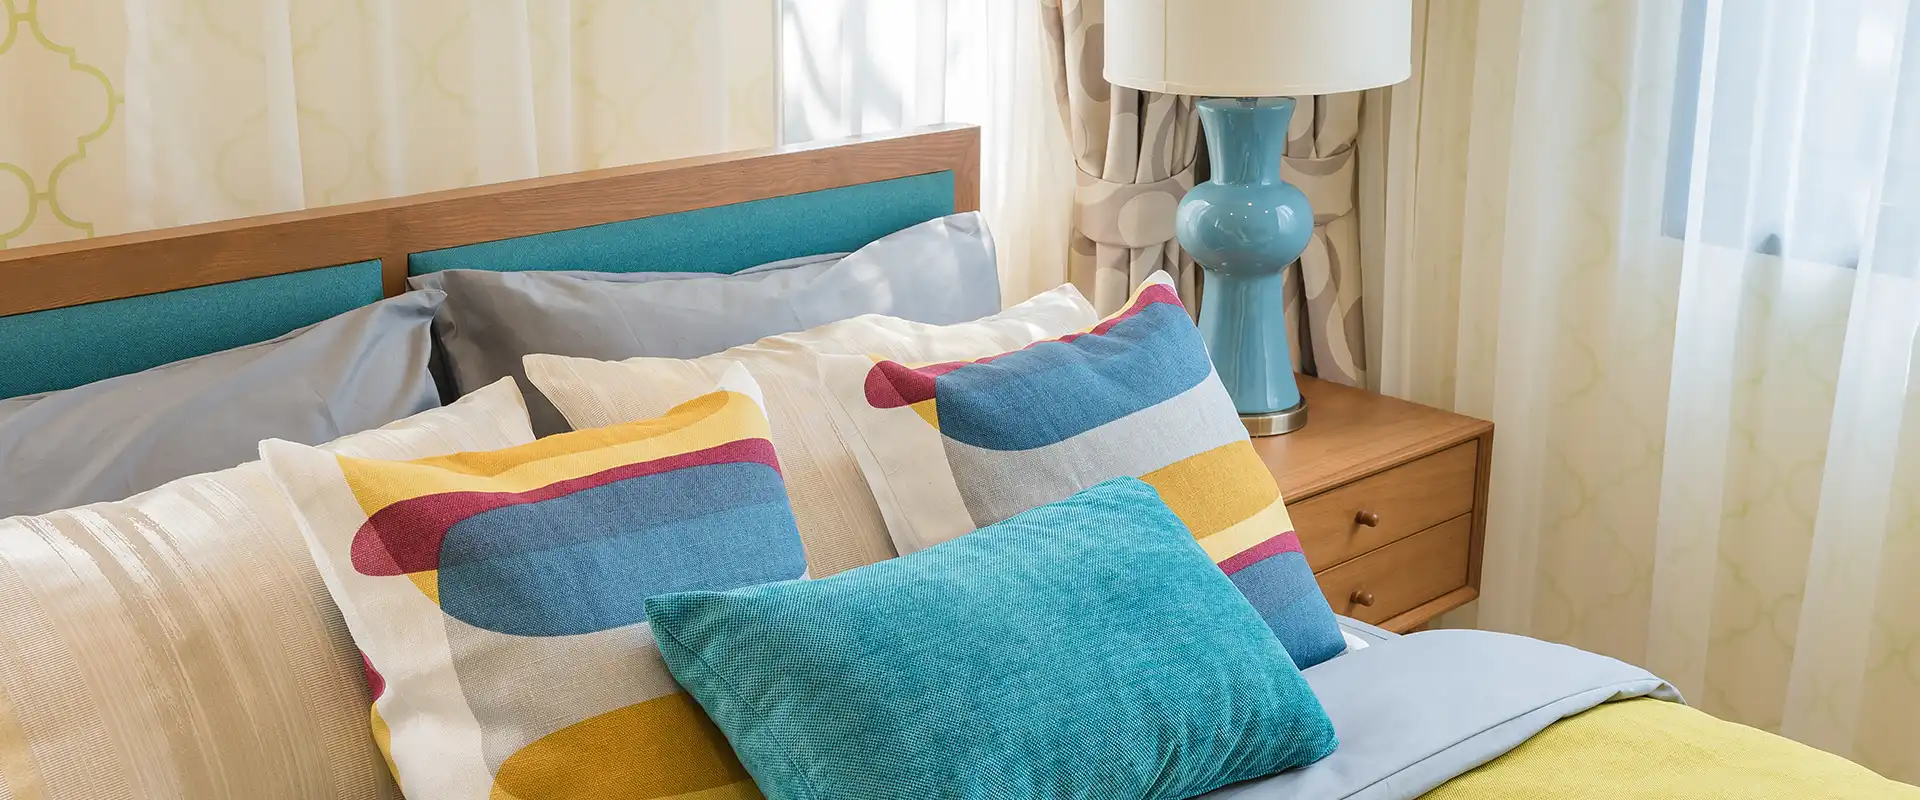 Frisch gemachtes Bett mit bunten Kissen und Bettbezug vor beige gemustertem Vorhang und Nachttisch